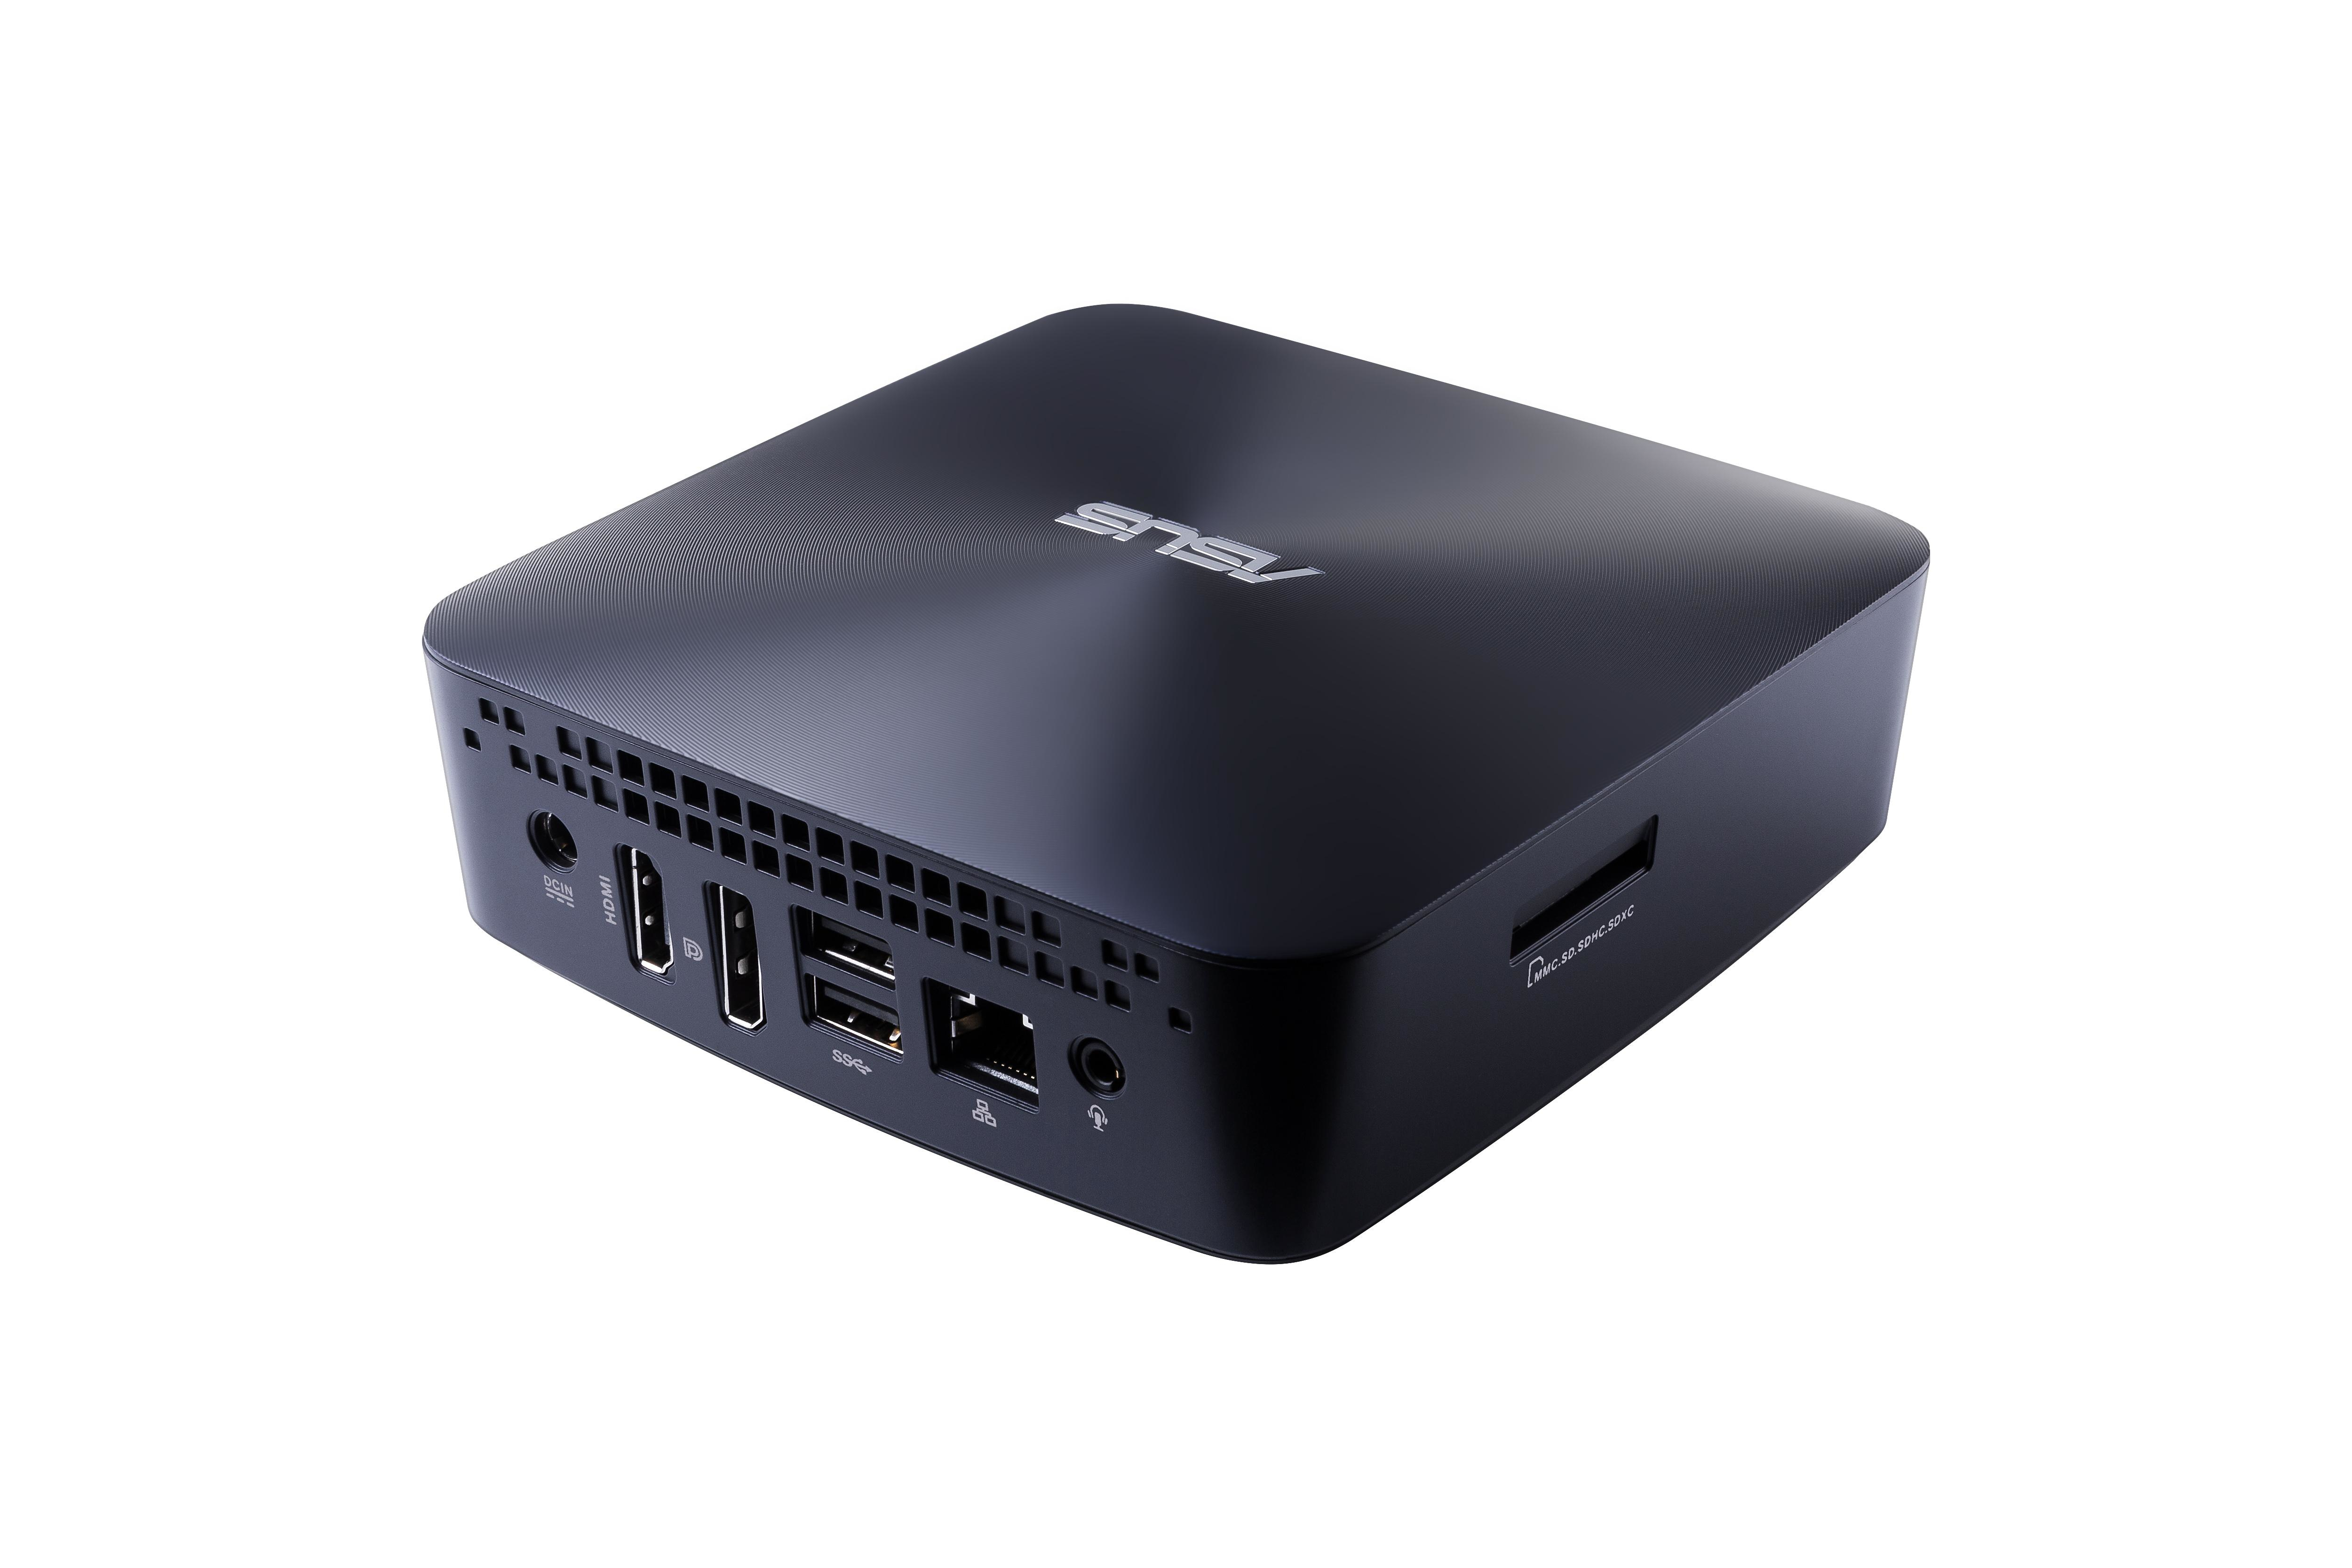 Asus Vivomini Un65U-M023M Core I3-7100U, Hdmi, Wifi, Usb 3.0